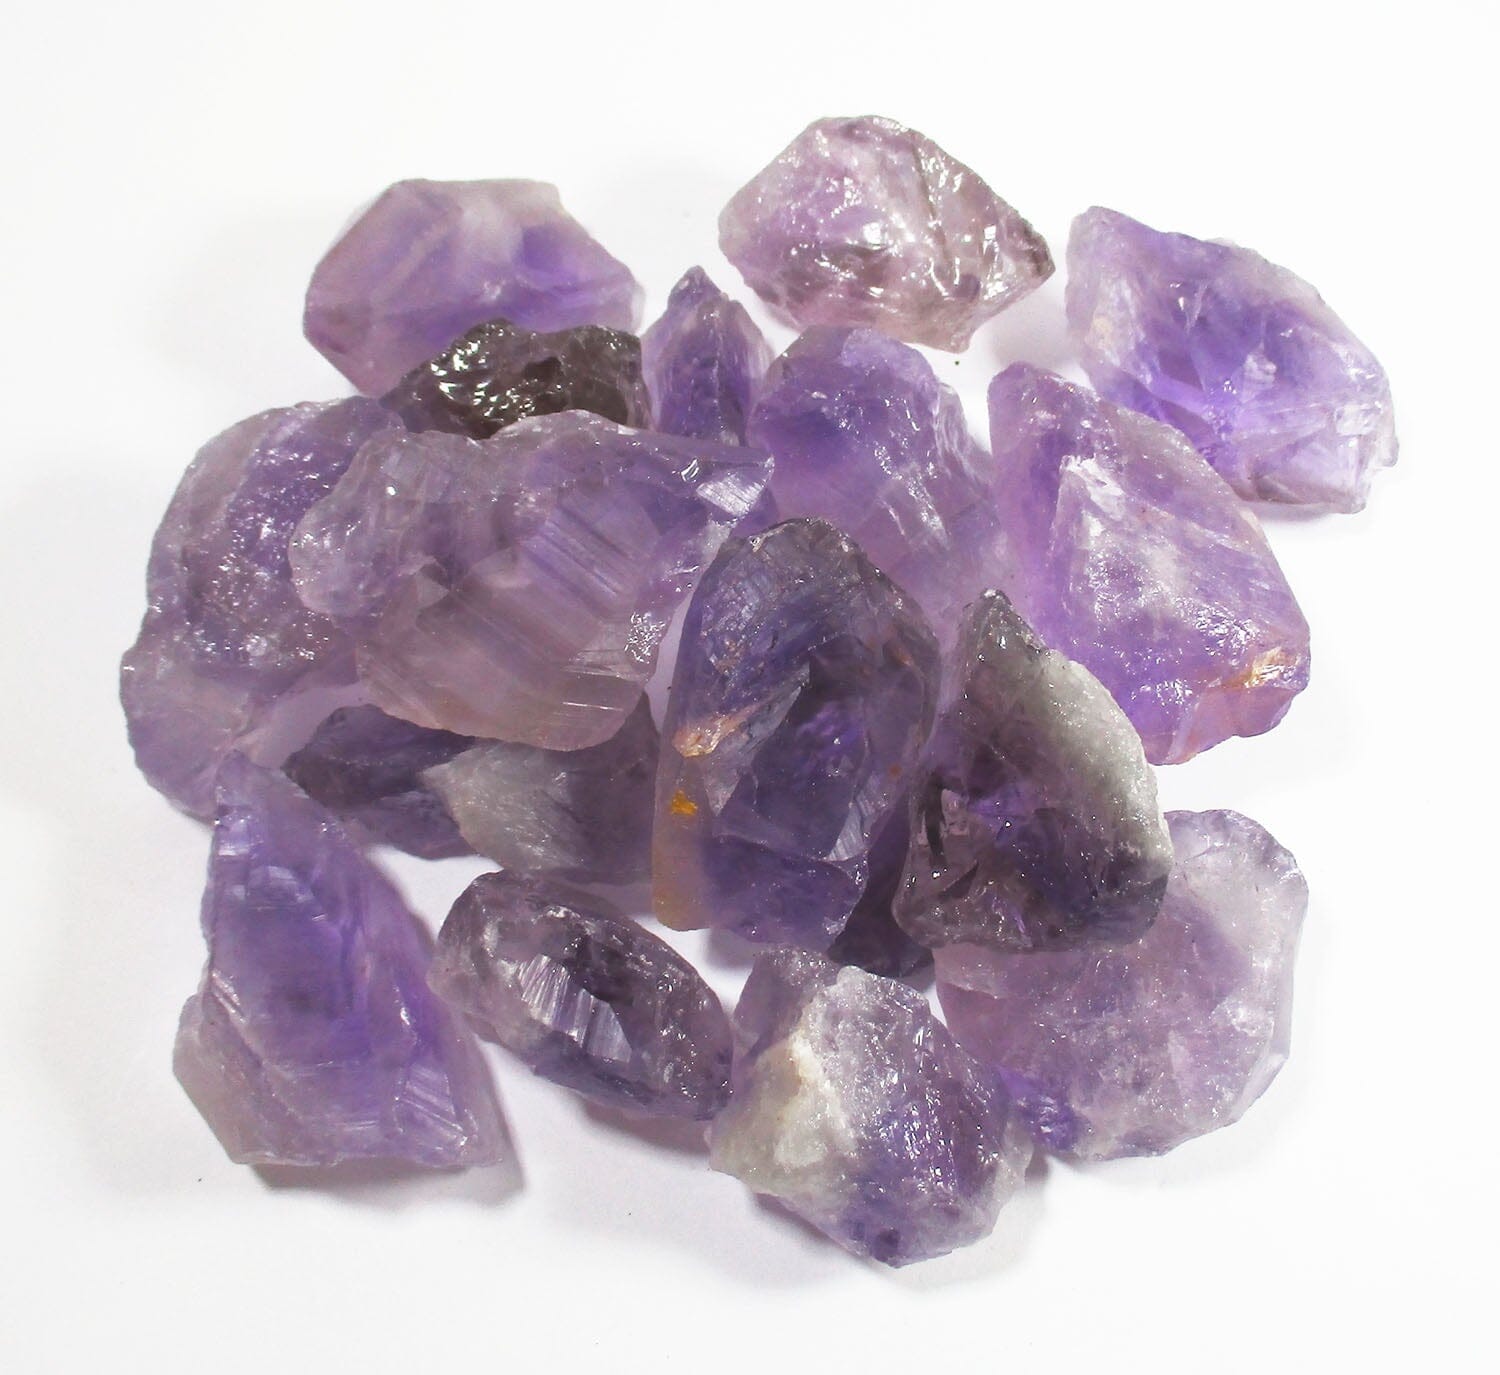 Amethyst Rough Chunk (Small) - Natural Crystals > Raw Crystal Chunks